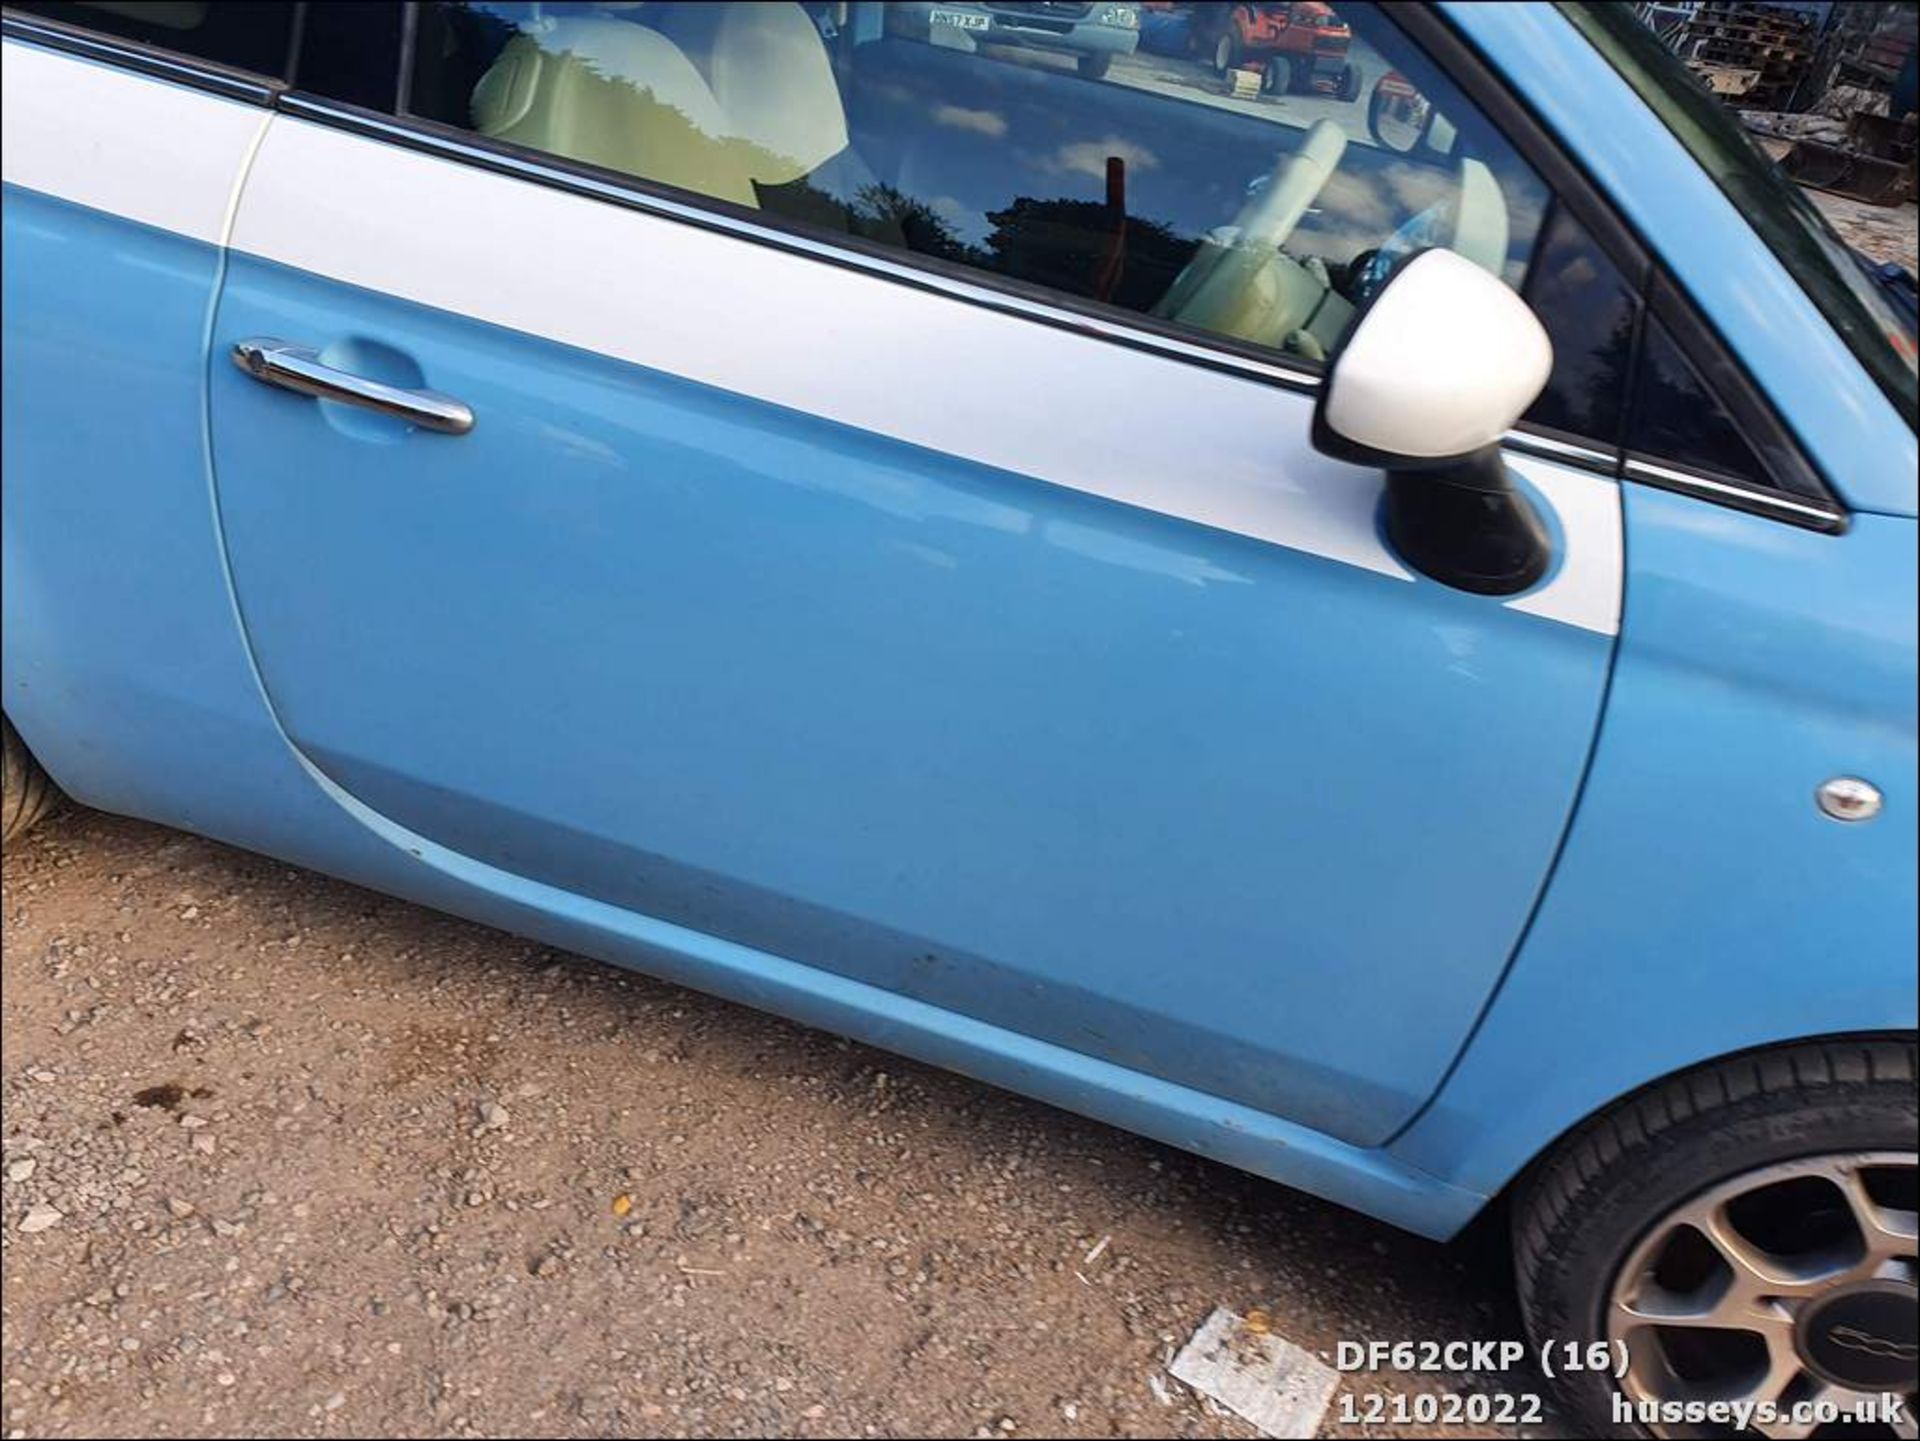 12/62 FIAT 500 LOUNGE RHD - 1242cc 3dr Hatchback (Blue, 62k) - Image 16 of 42